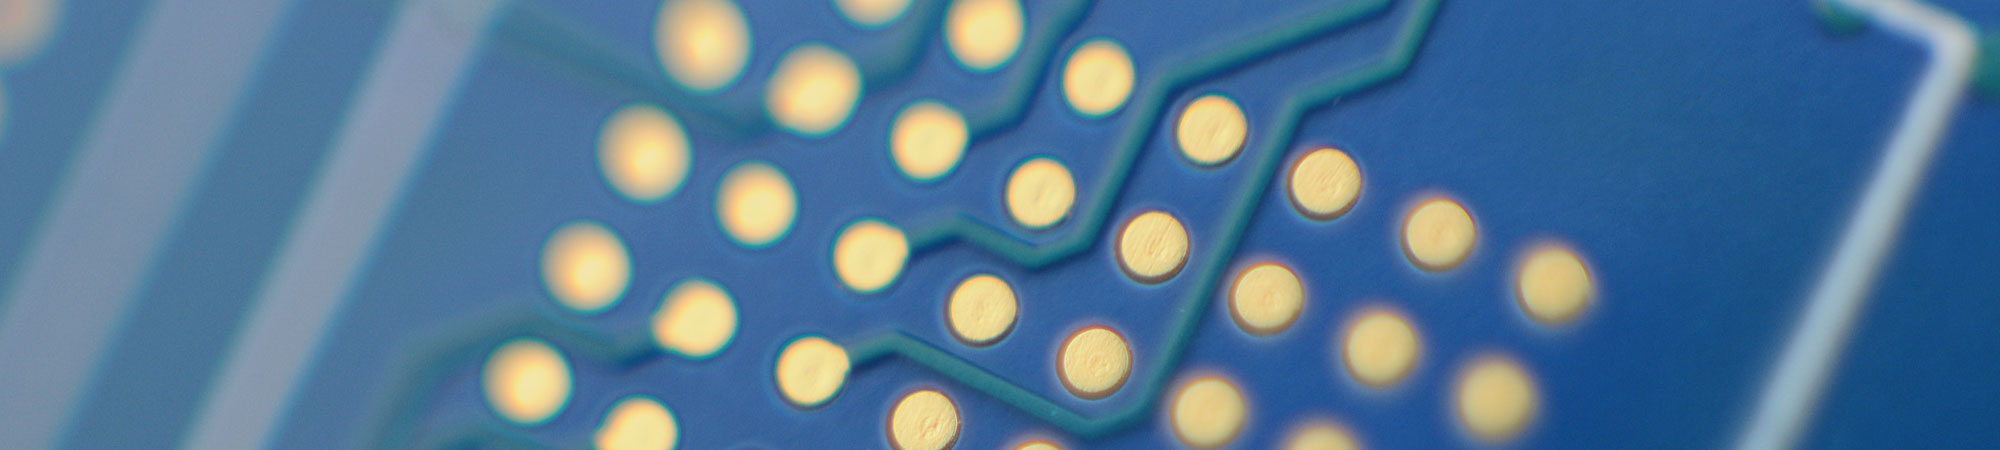 Hi-Tech Printed Circuit Boards